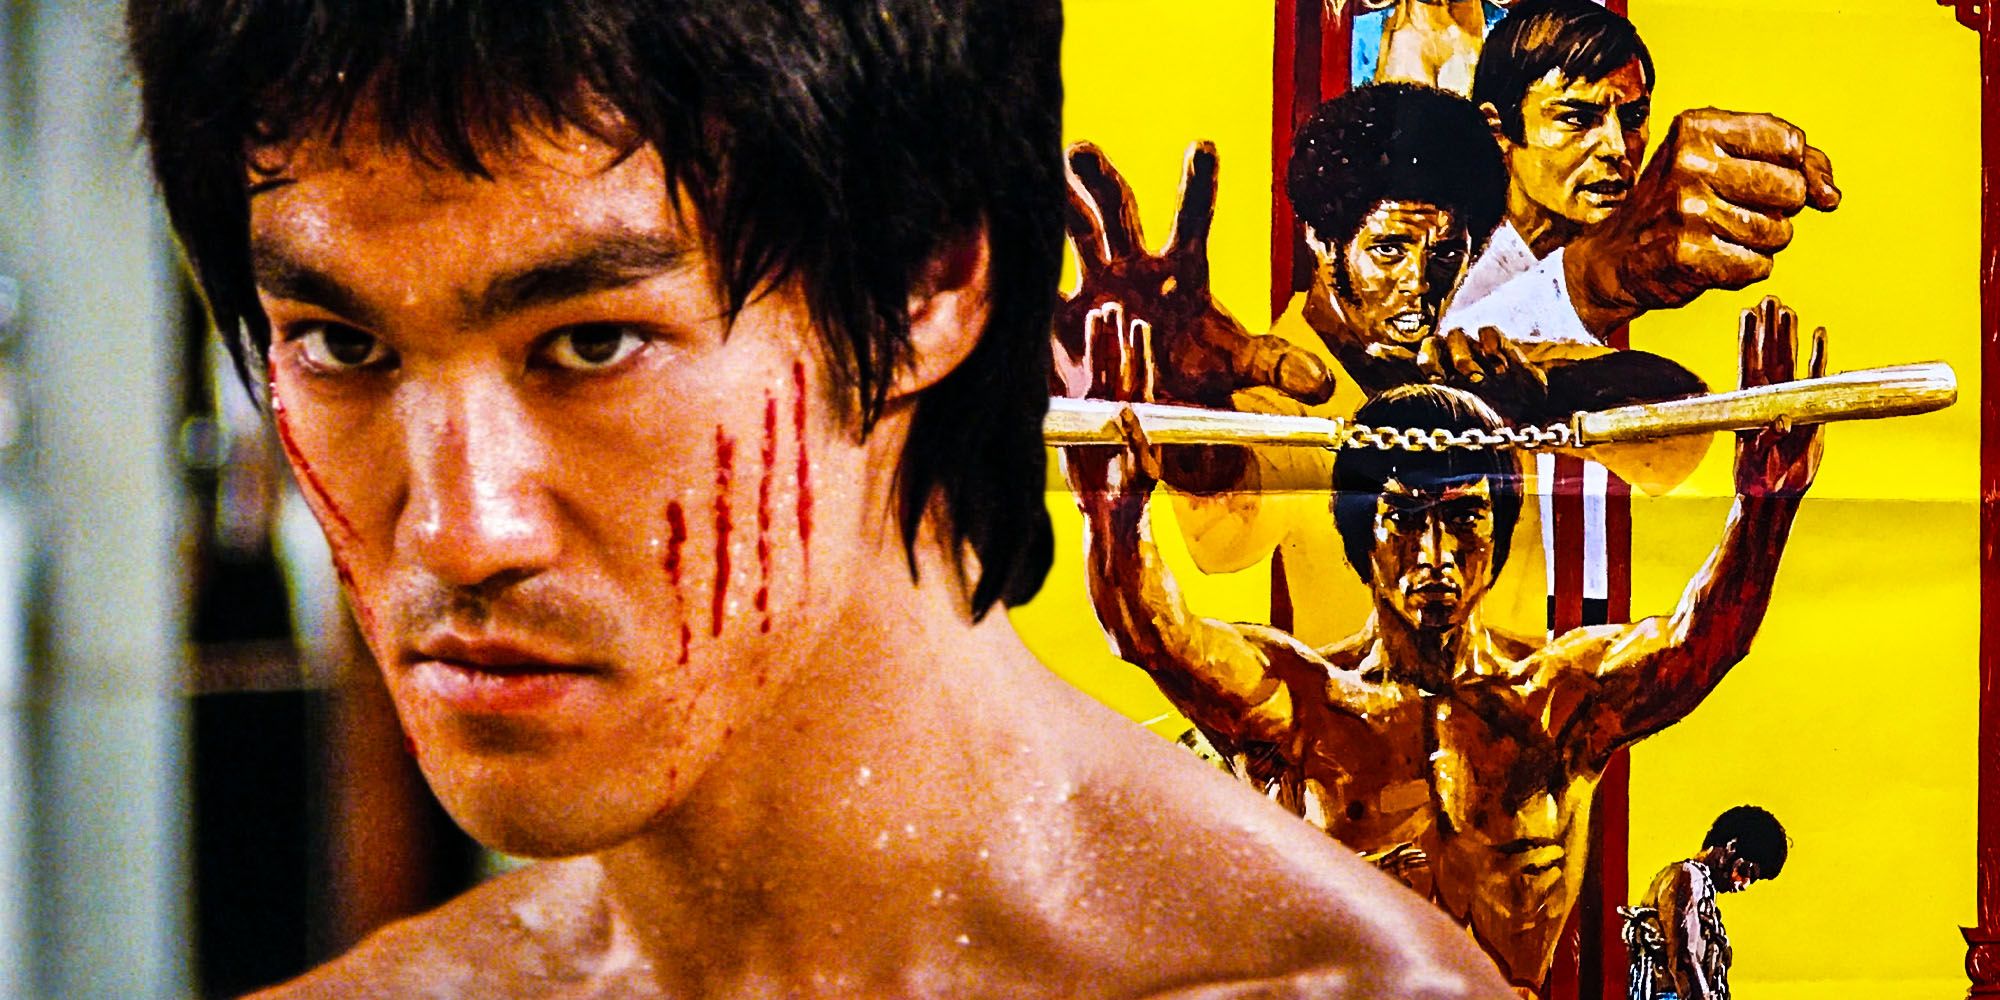 Por qué Hollywood finalmente eligió a Bruce Lee (después de rechazarlo durante tanto tiempo)